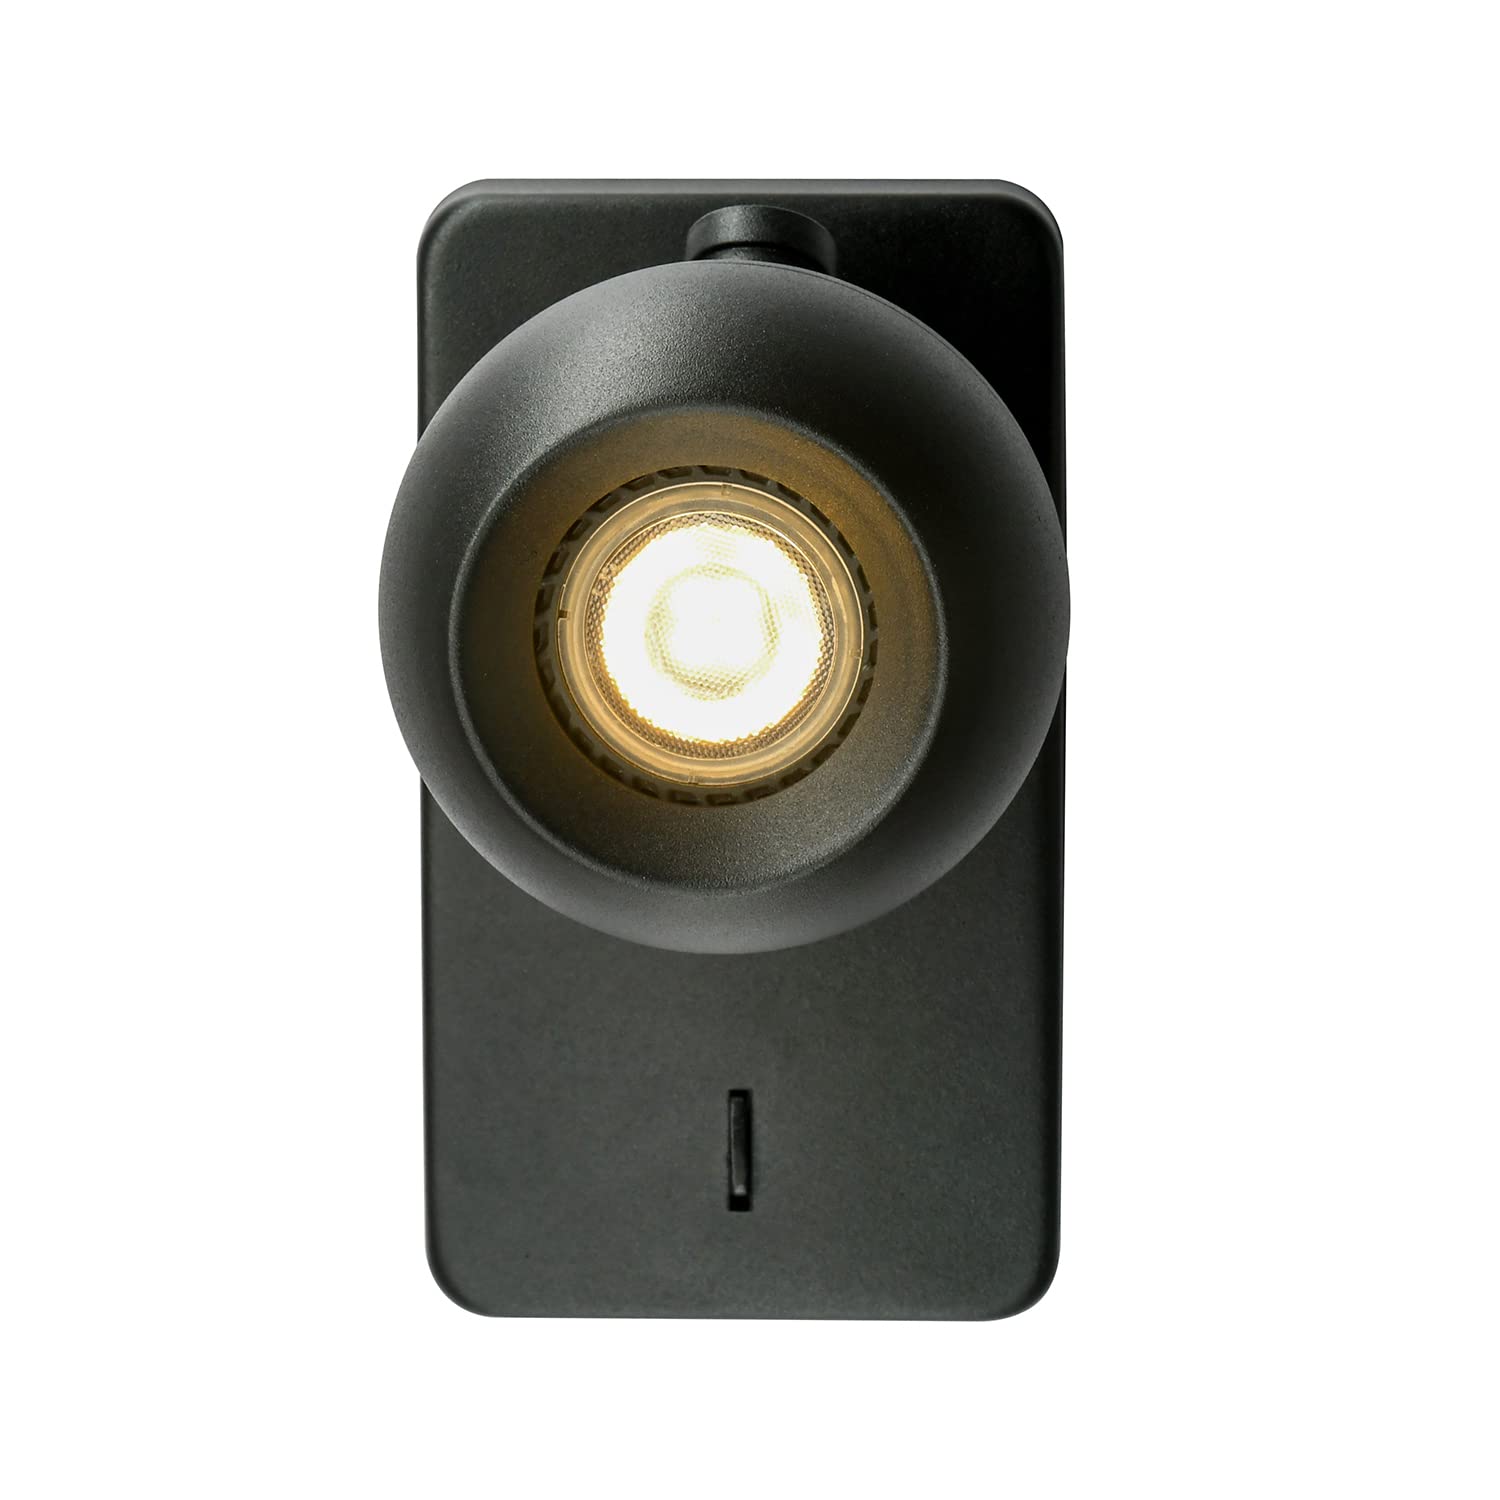 Topmo-plus wandlampe bett led wandleseleuchte wandstrahler mit Schalter innen leselicht schwarz schwenkbare nachttischlampe wandmontage schlafzimmer 5W dimmbare LED glühbirne